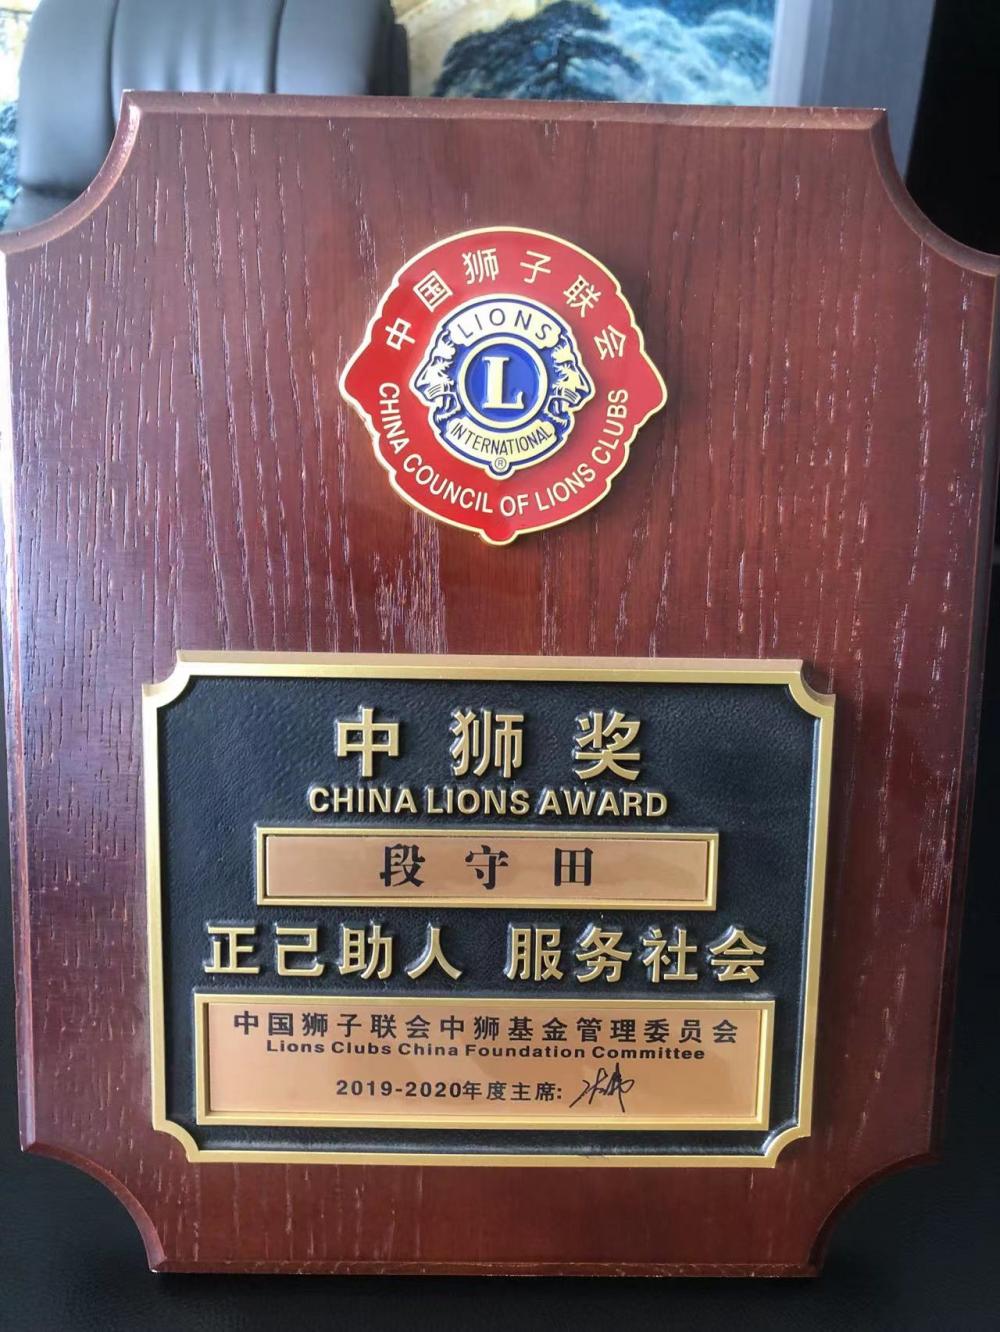 China Lions Award